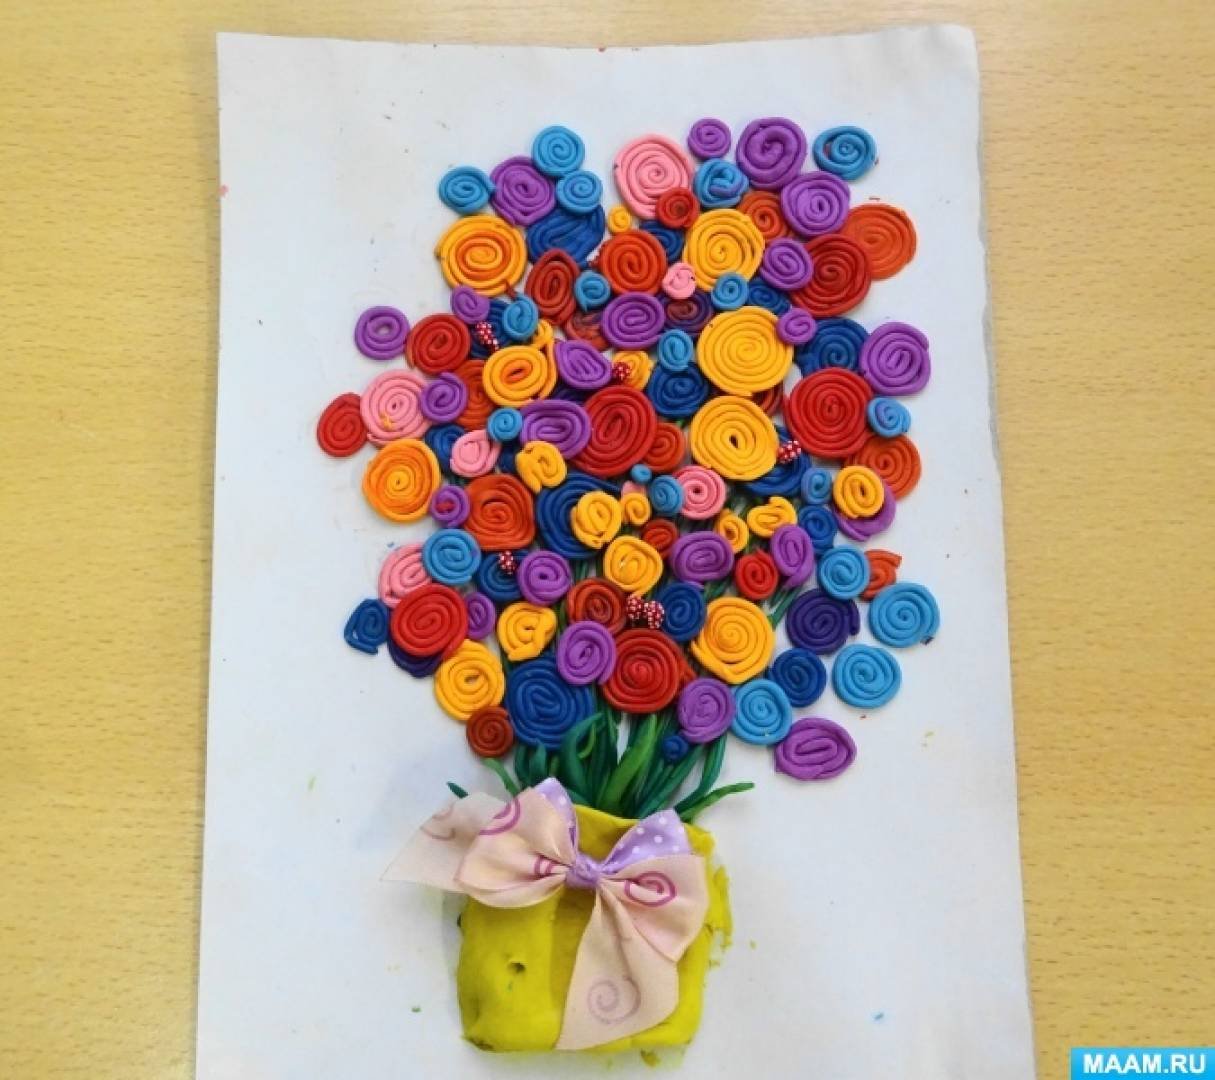 Пластилинография для дошкольников. Букет для мамы пластилин. Цветы в технике пластилинографии. Цветы пластилином на картоне.